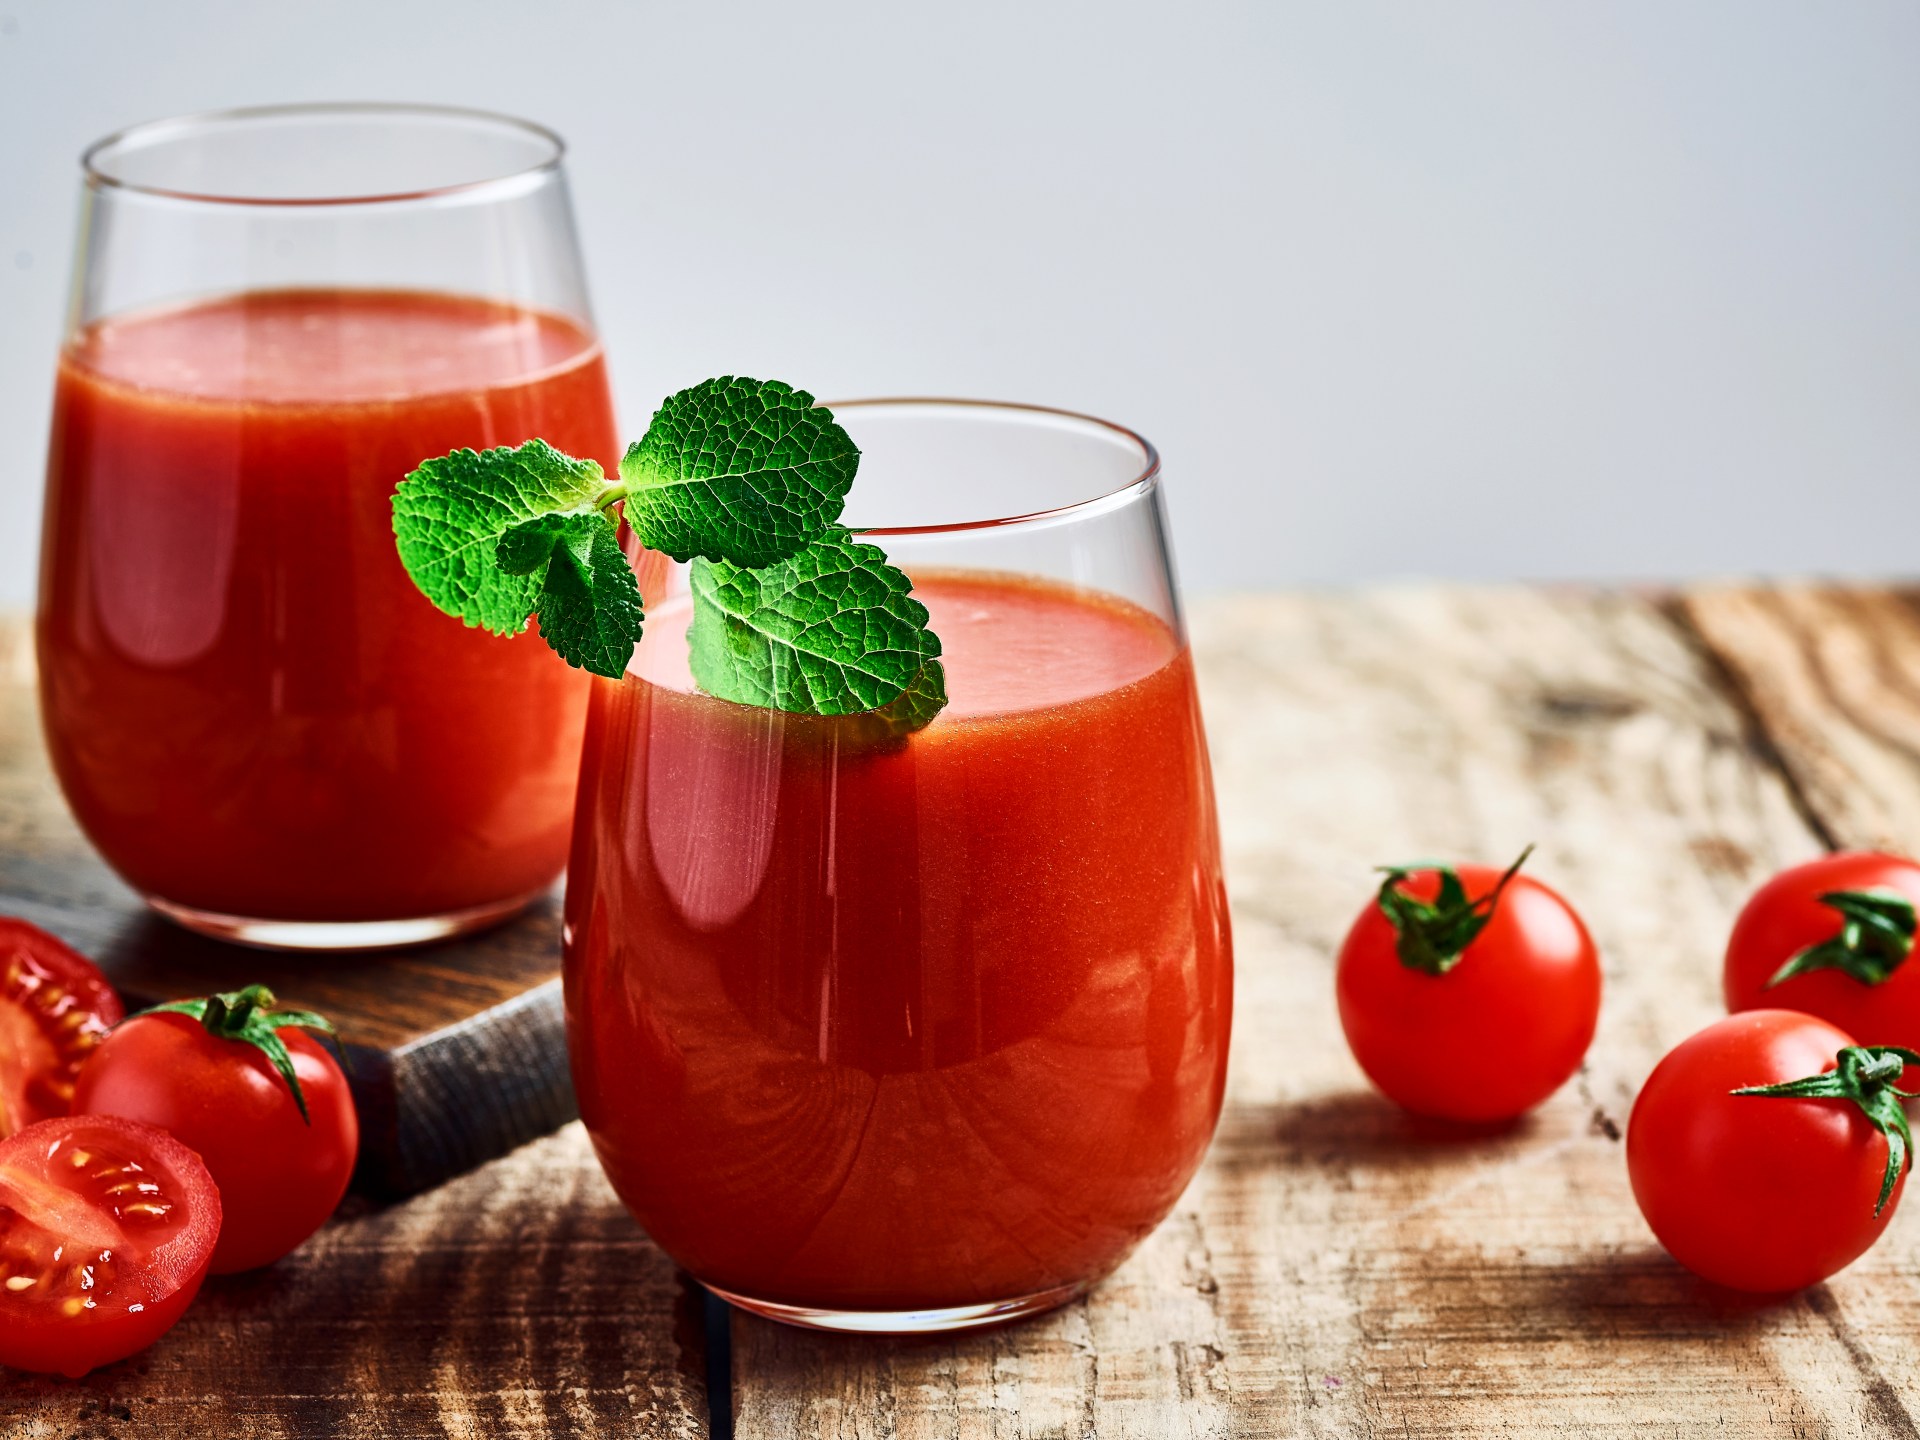 دراسة: عصير الطماطم يقتل السالمونيلا | صحة – البوكس نيوز